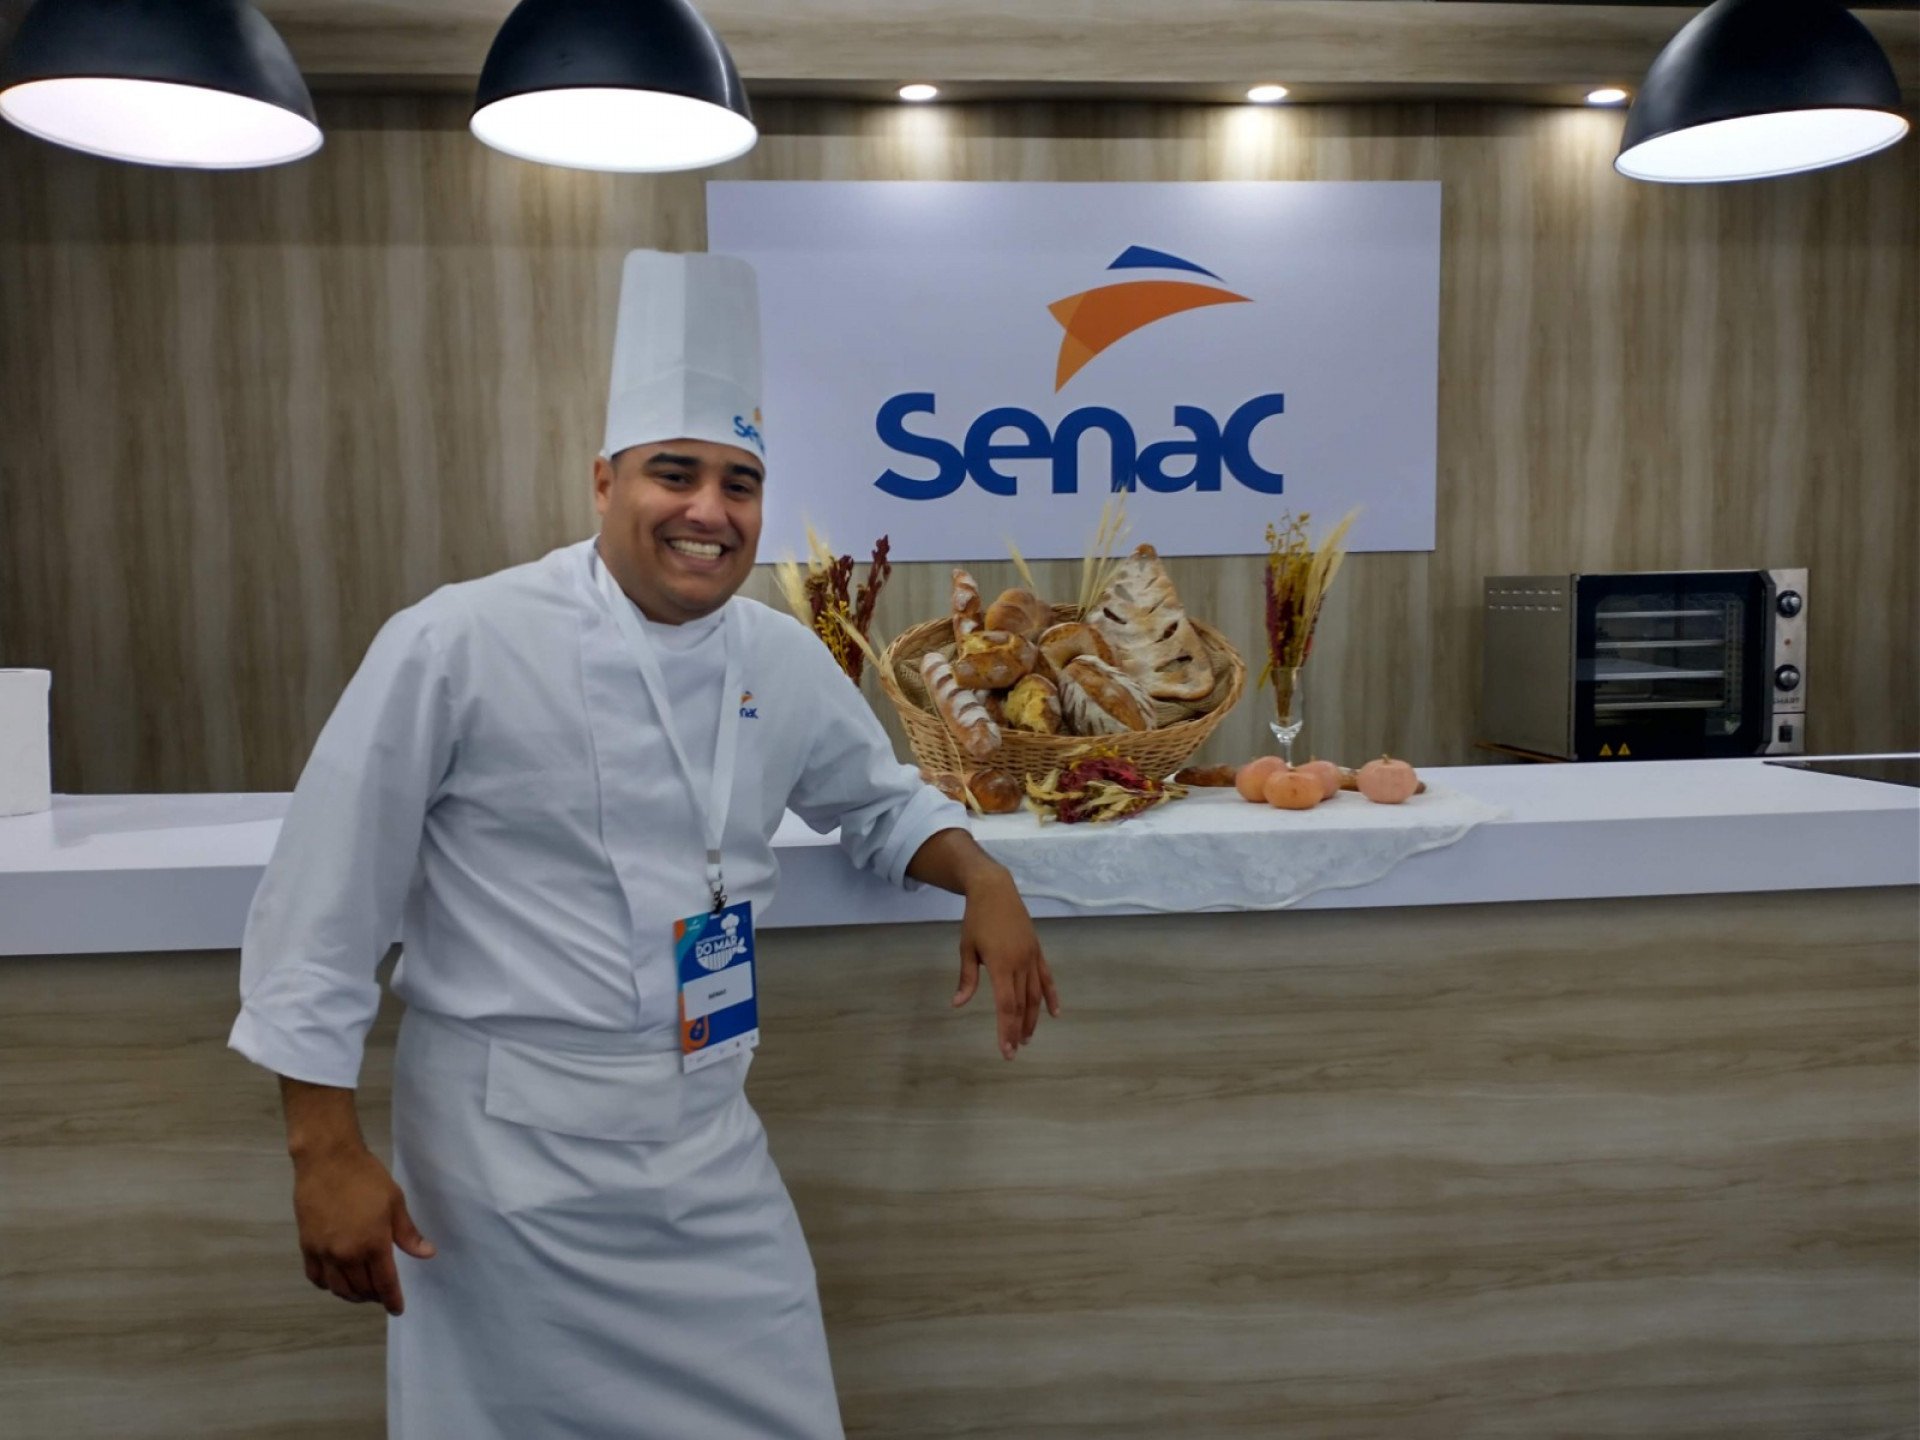 Cozinha Show terá renomados chefs trazendo inovações de cardápios com frutos do mar que poderão ser degustados pelos participantes - Divulgação/SENAC